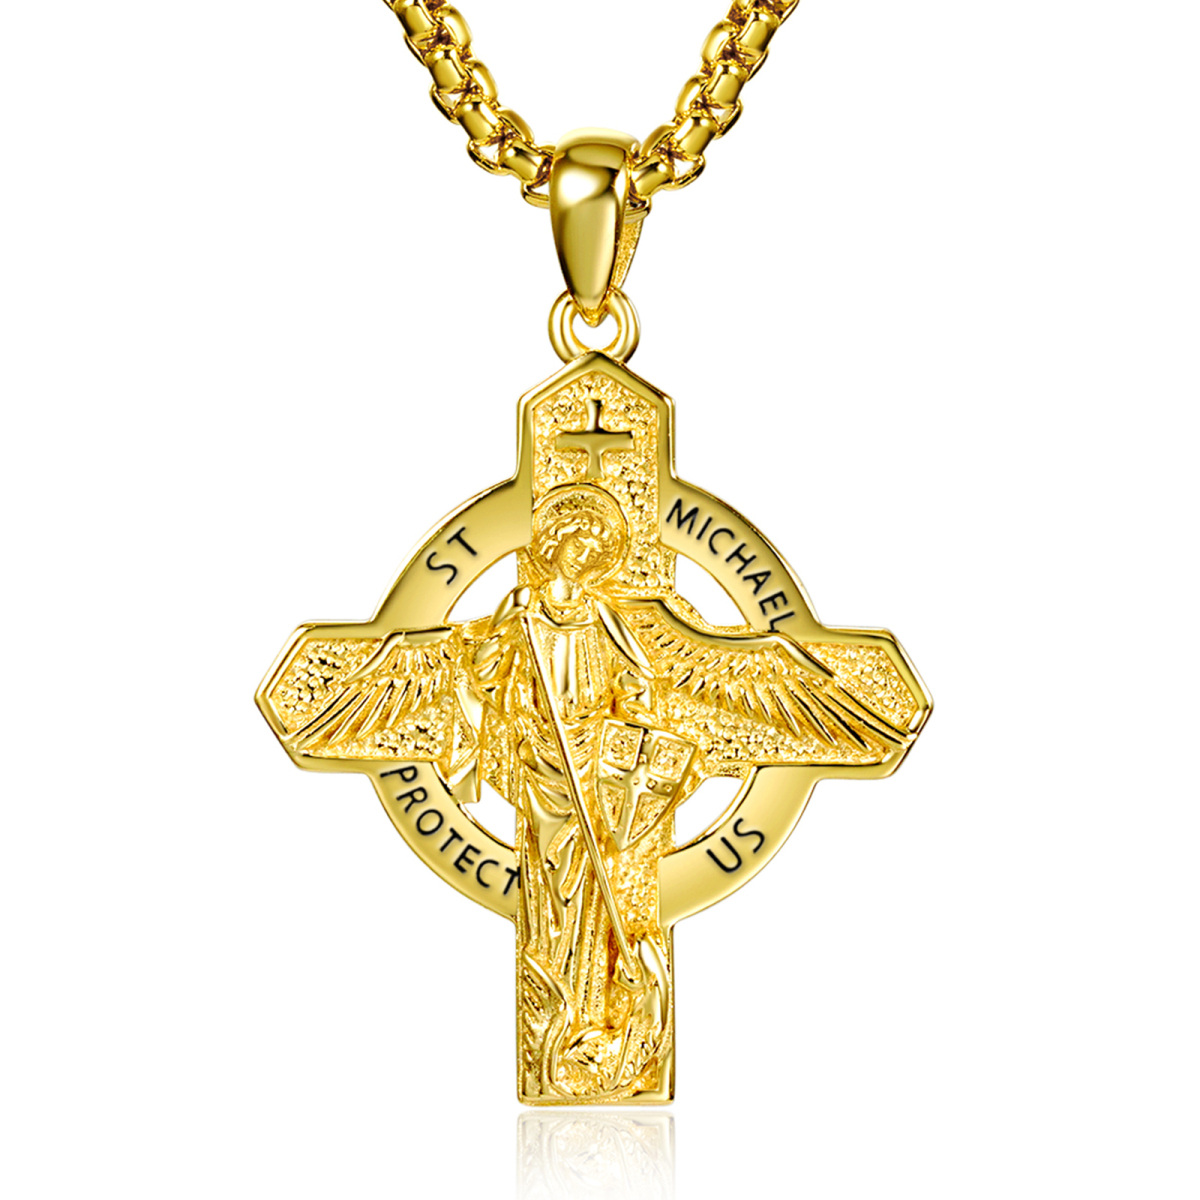 Halskette mit Kreuzanhänger aus Sterlingsilber mit eingraviertem Wort-1